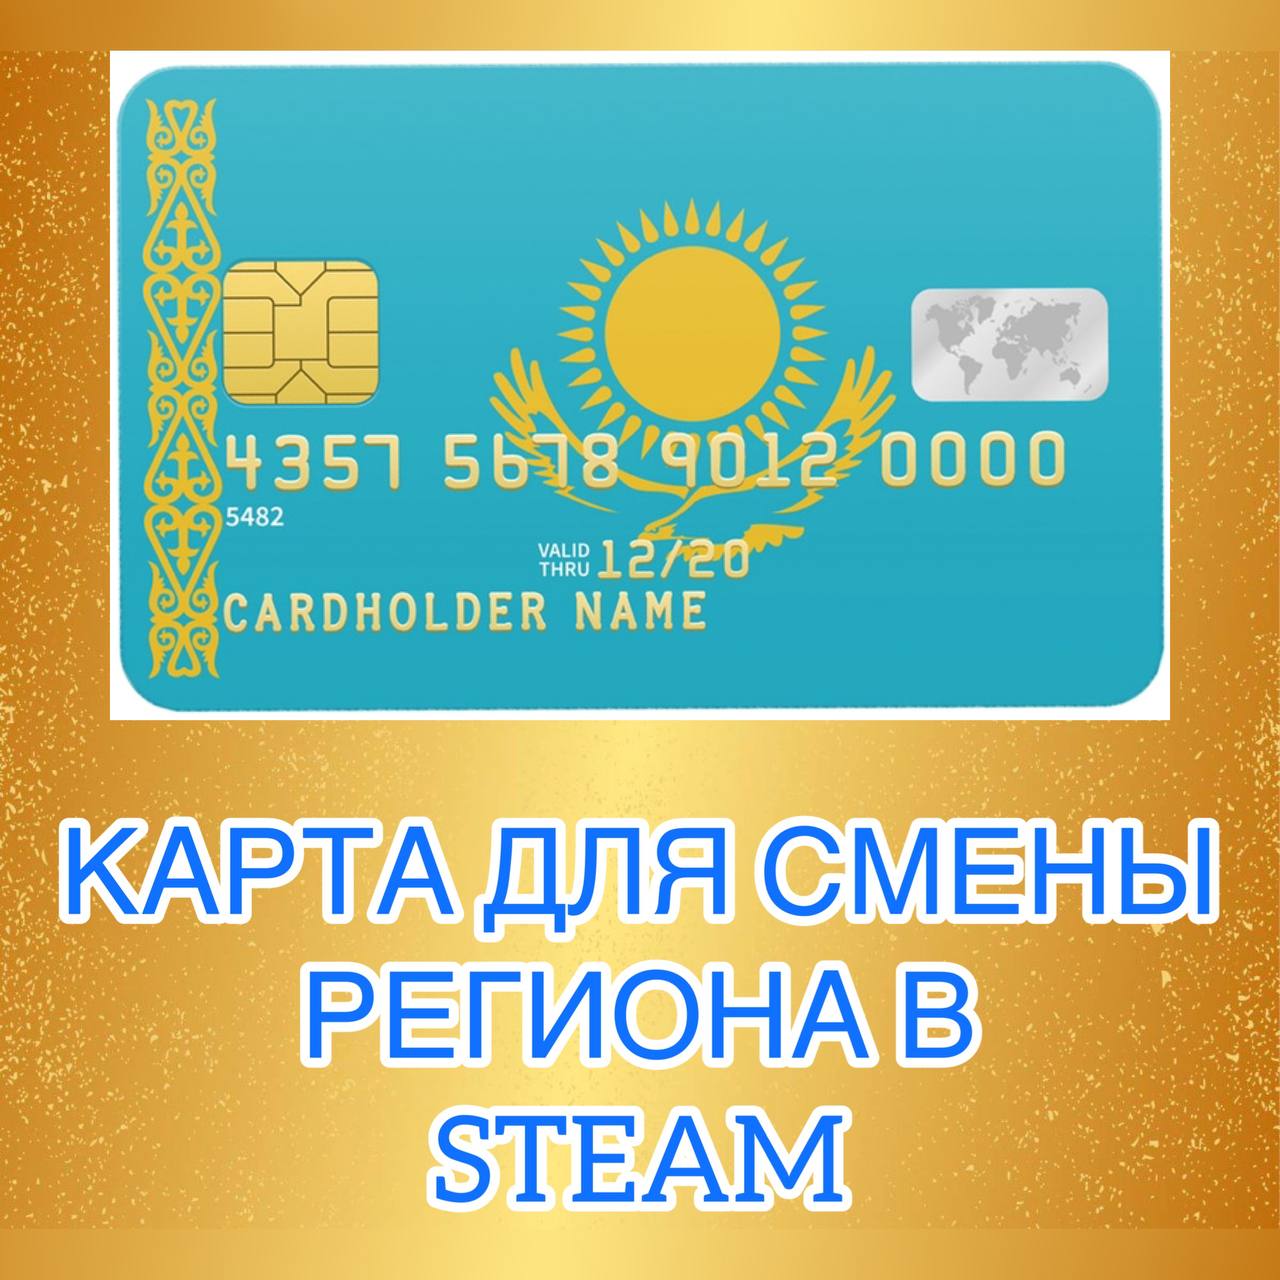 💳 VIRTUAL KZT CARD TO CHANGE STEAM KAZAKHSTAN 💲💲